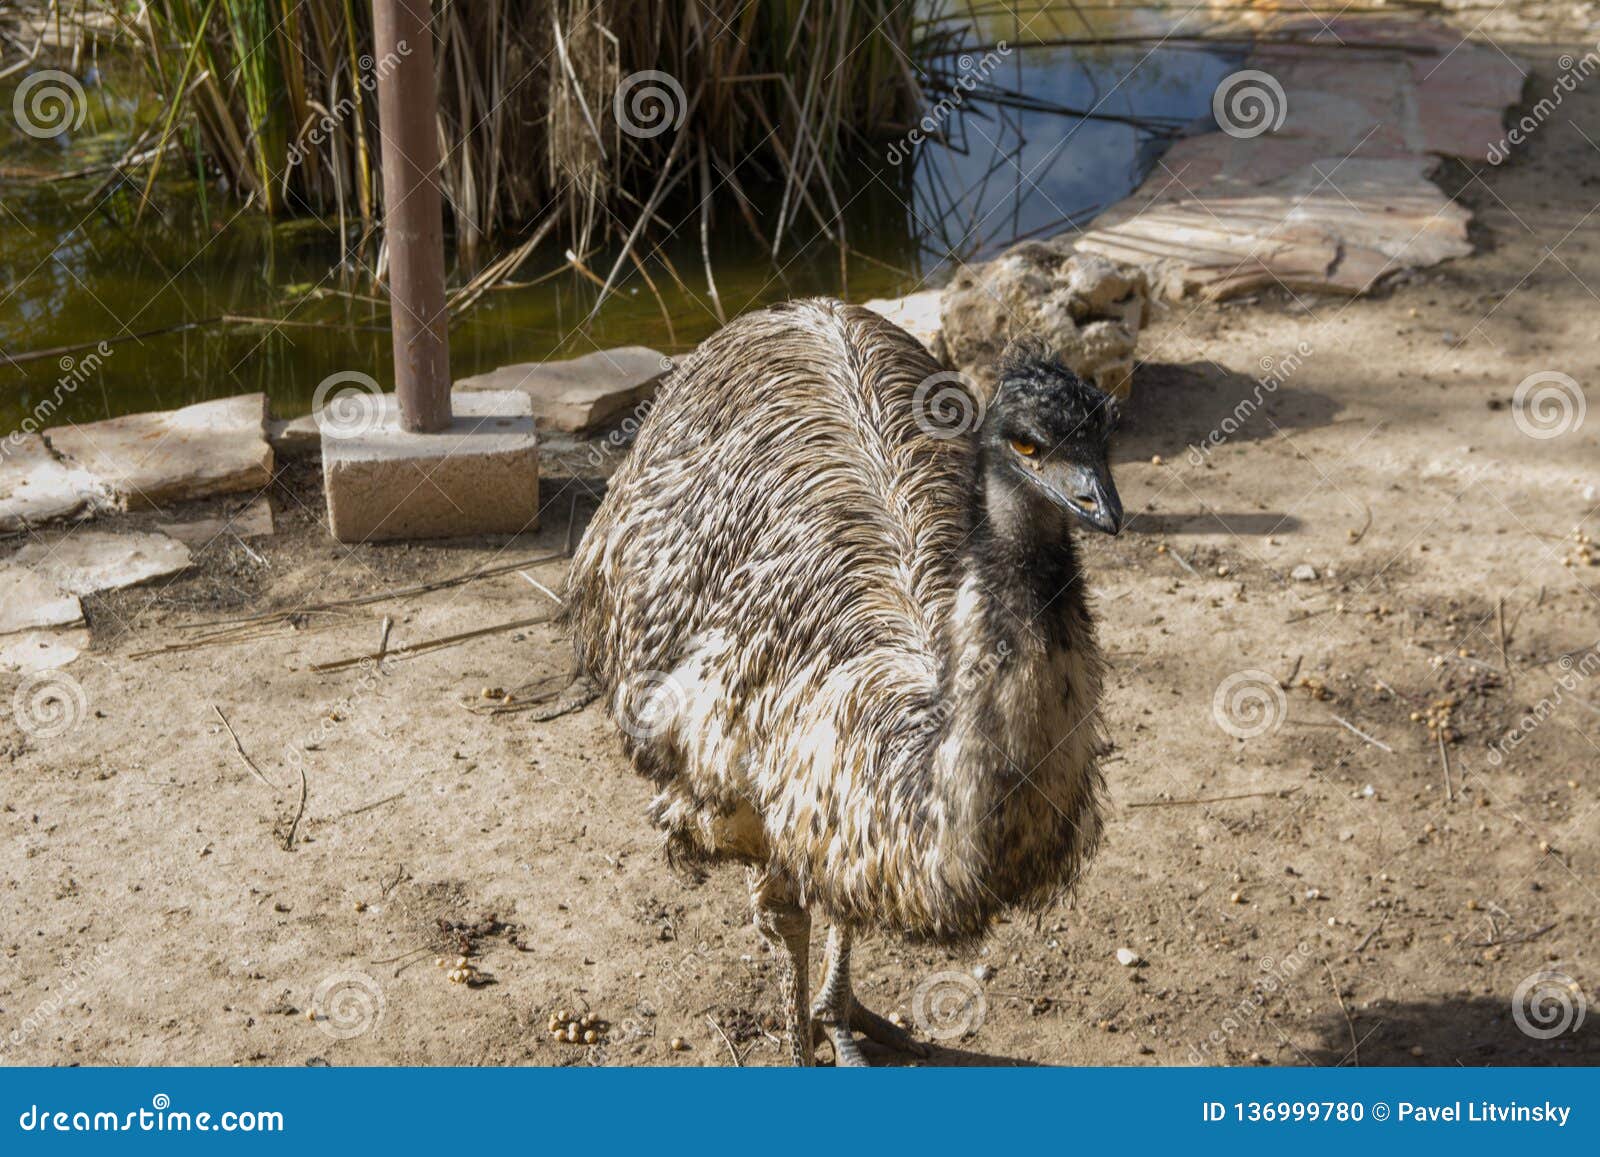 emu living in captivity. ostrich close up. australian bird